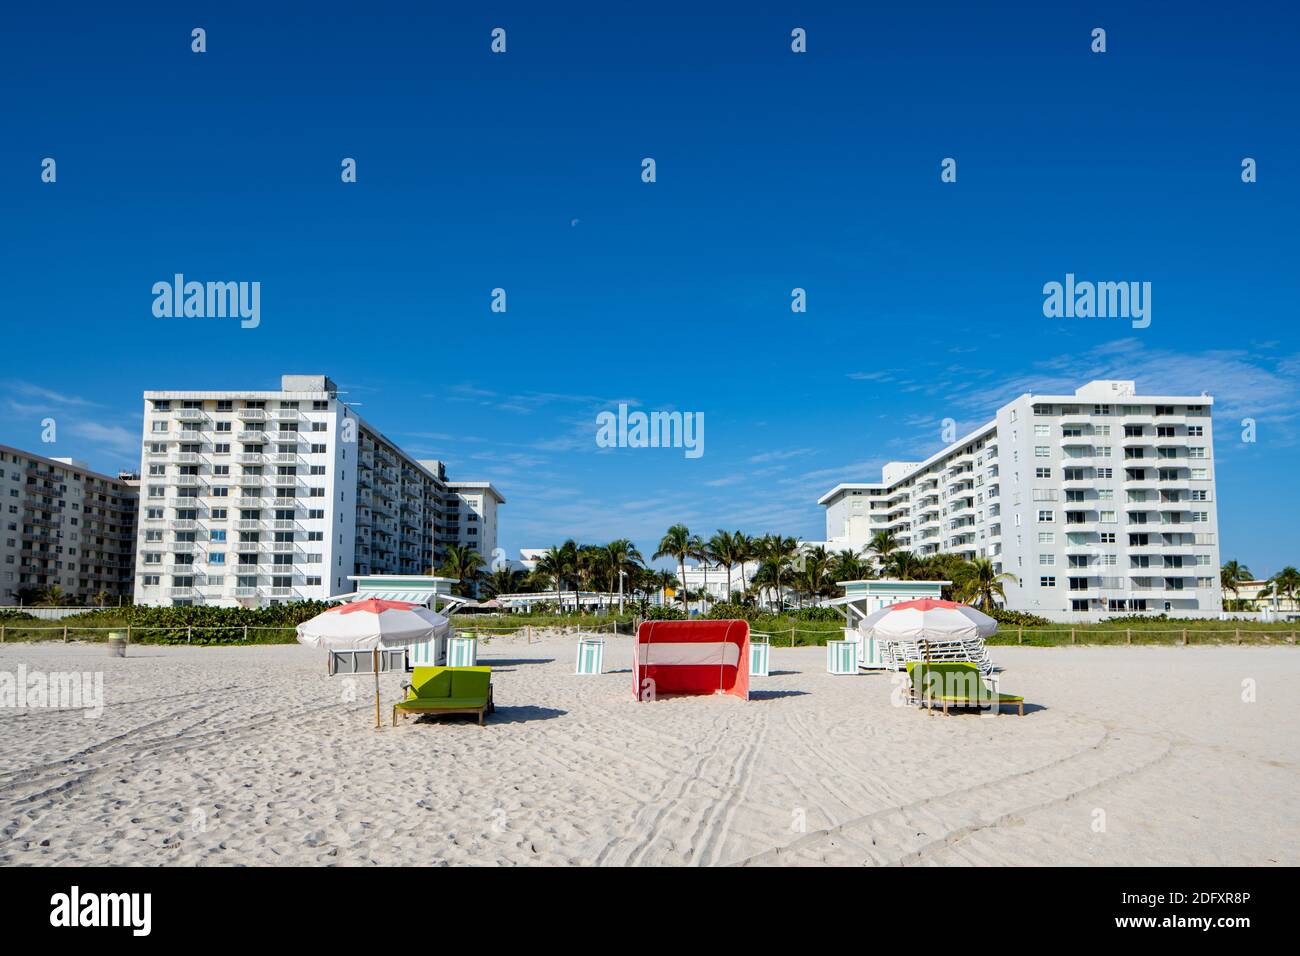 Salon de l'hôtel Miami Beach et parasols pour les touristes Banque D'Images